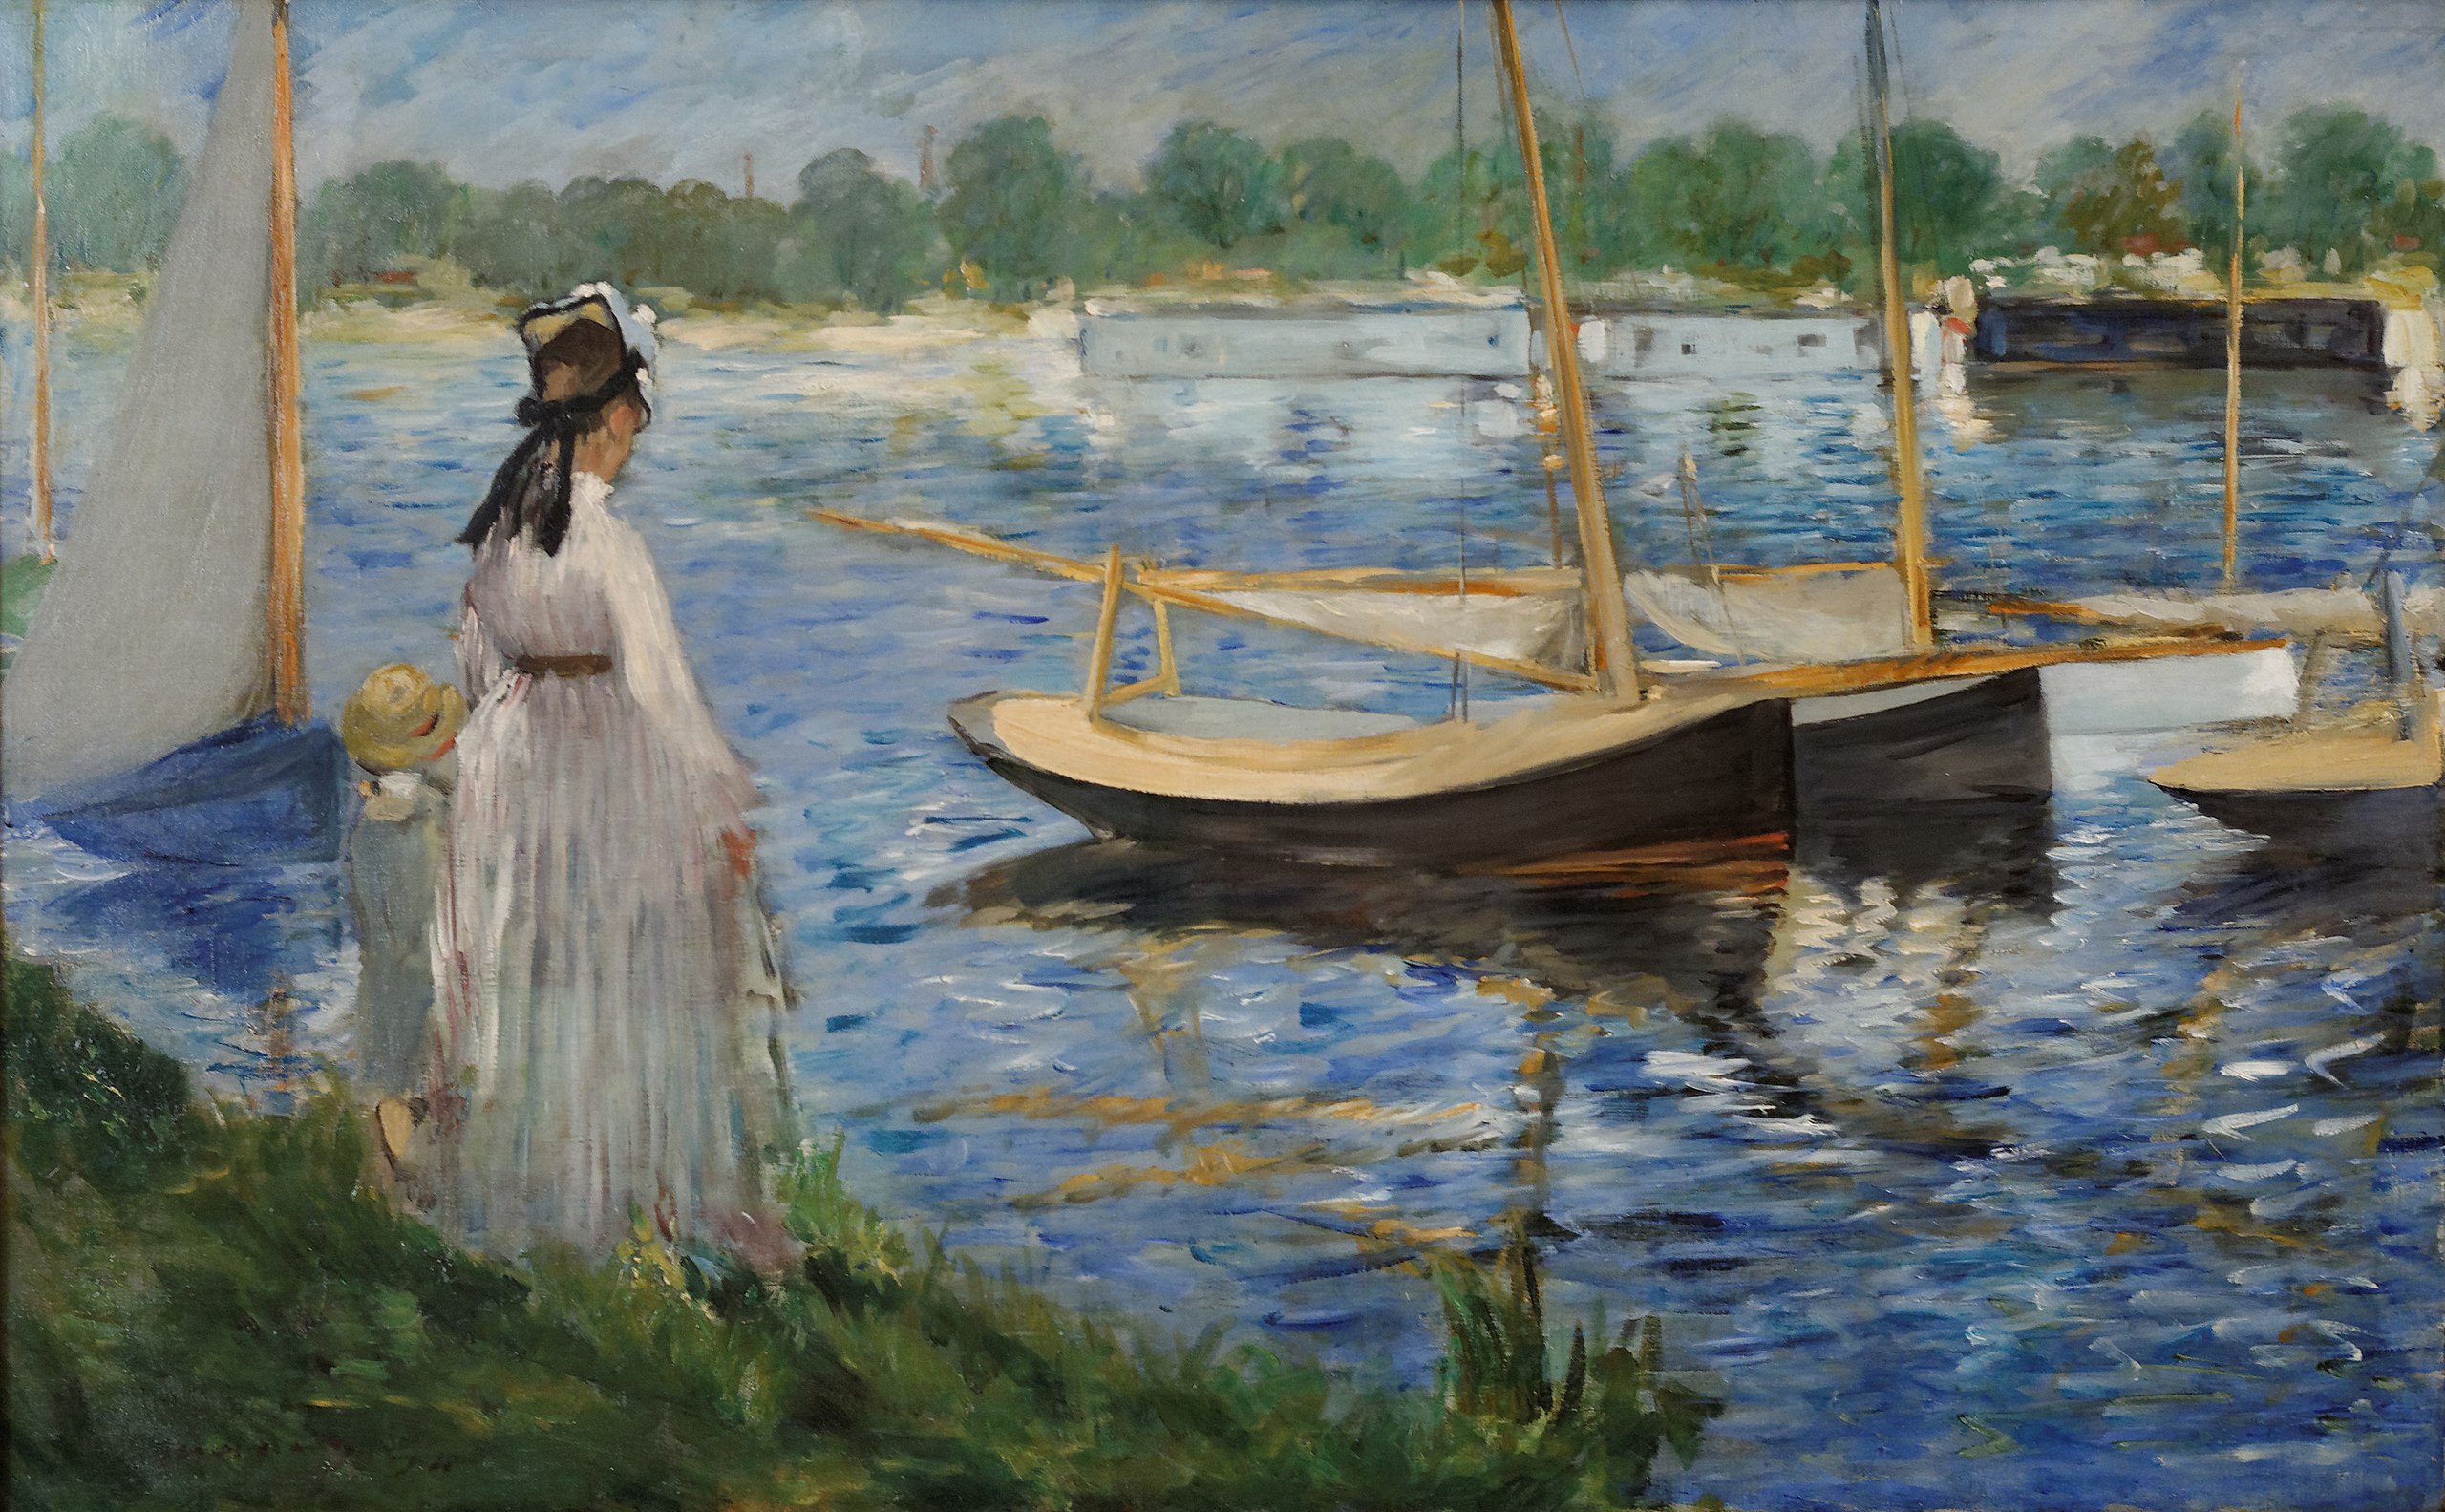 アルジャントゥイユ近くのセーヌ川 by Édouard Manet - 1874年 - 62.3 x 87 cm 